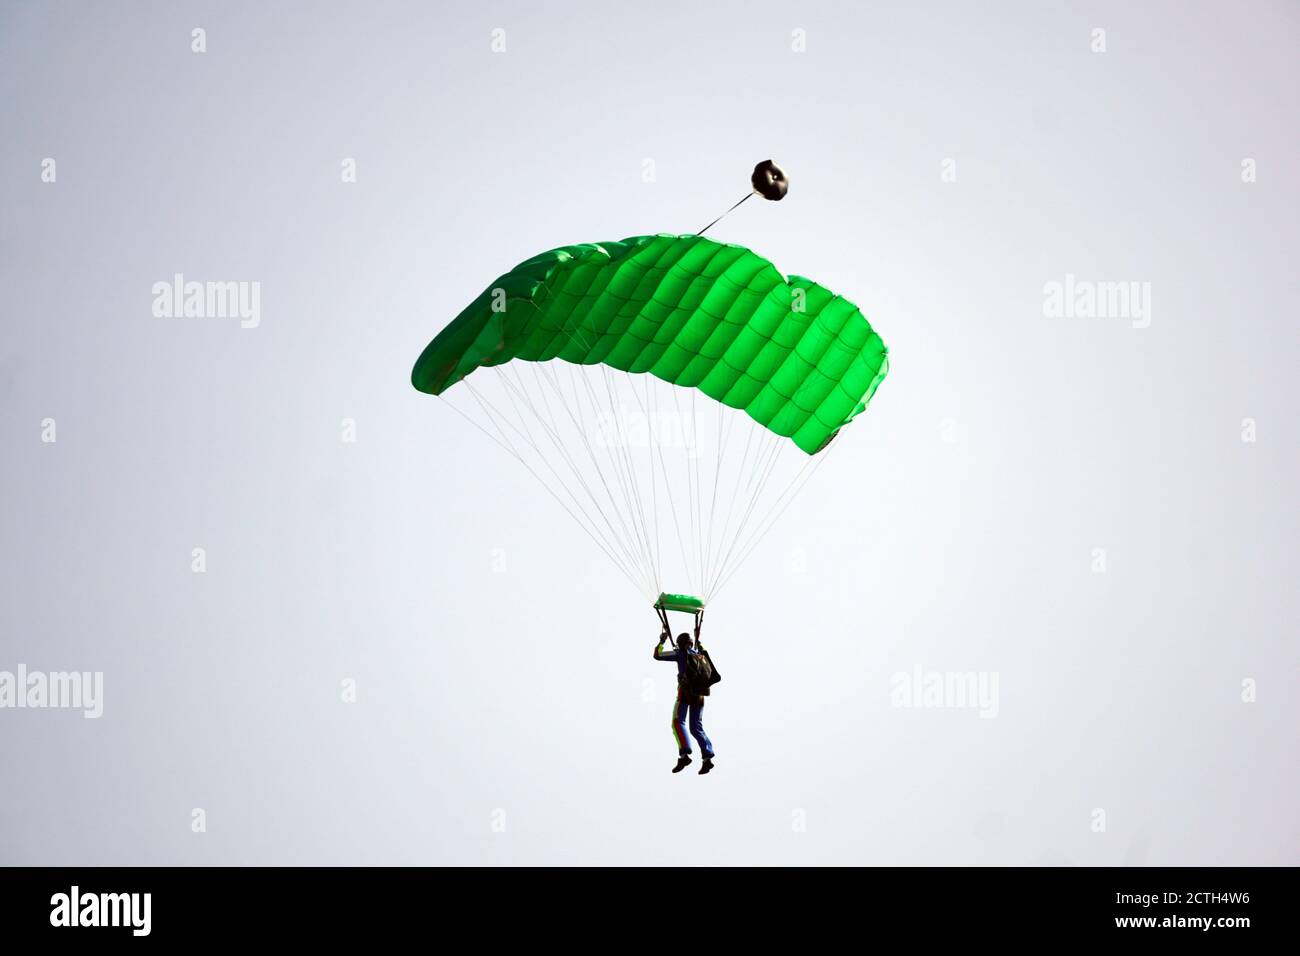 Der einzelne Fallschirmspringer, der aus dem Flugzeug gesprungen ist, benutzt einen Fallschirm, um zu landen. Einfaches Konzept mit Copy Space Photograph. Stockfoto